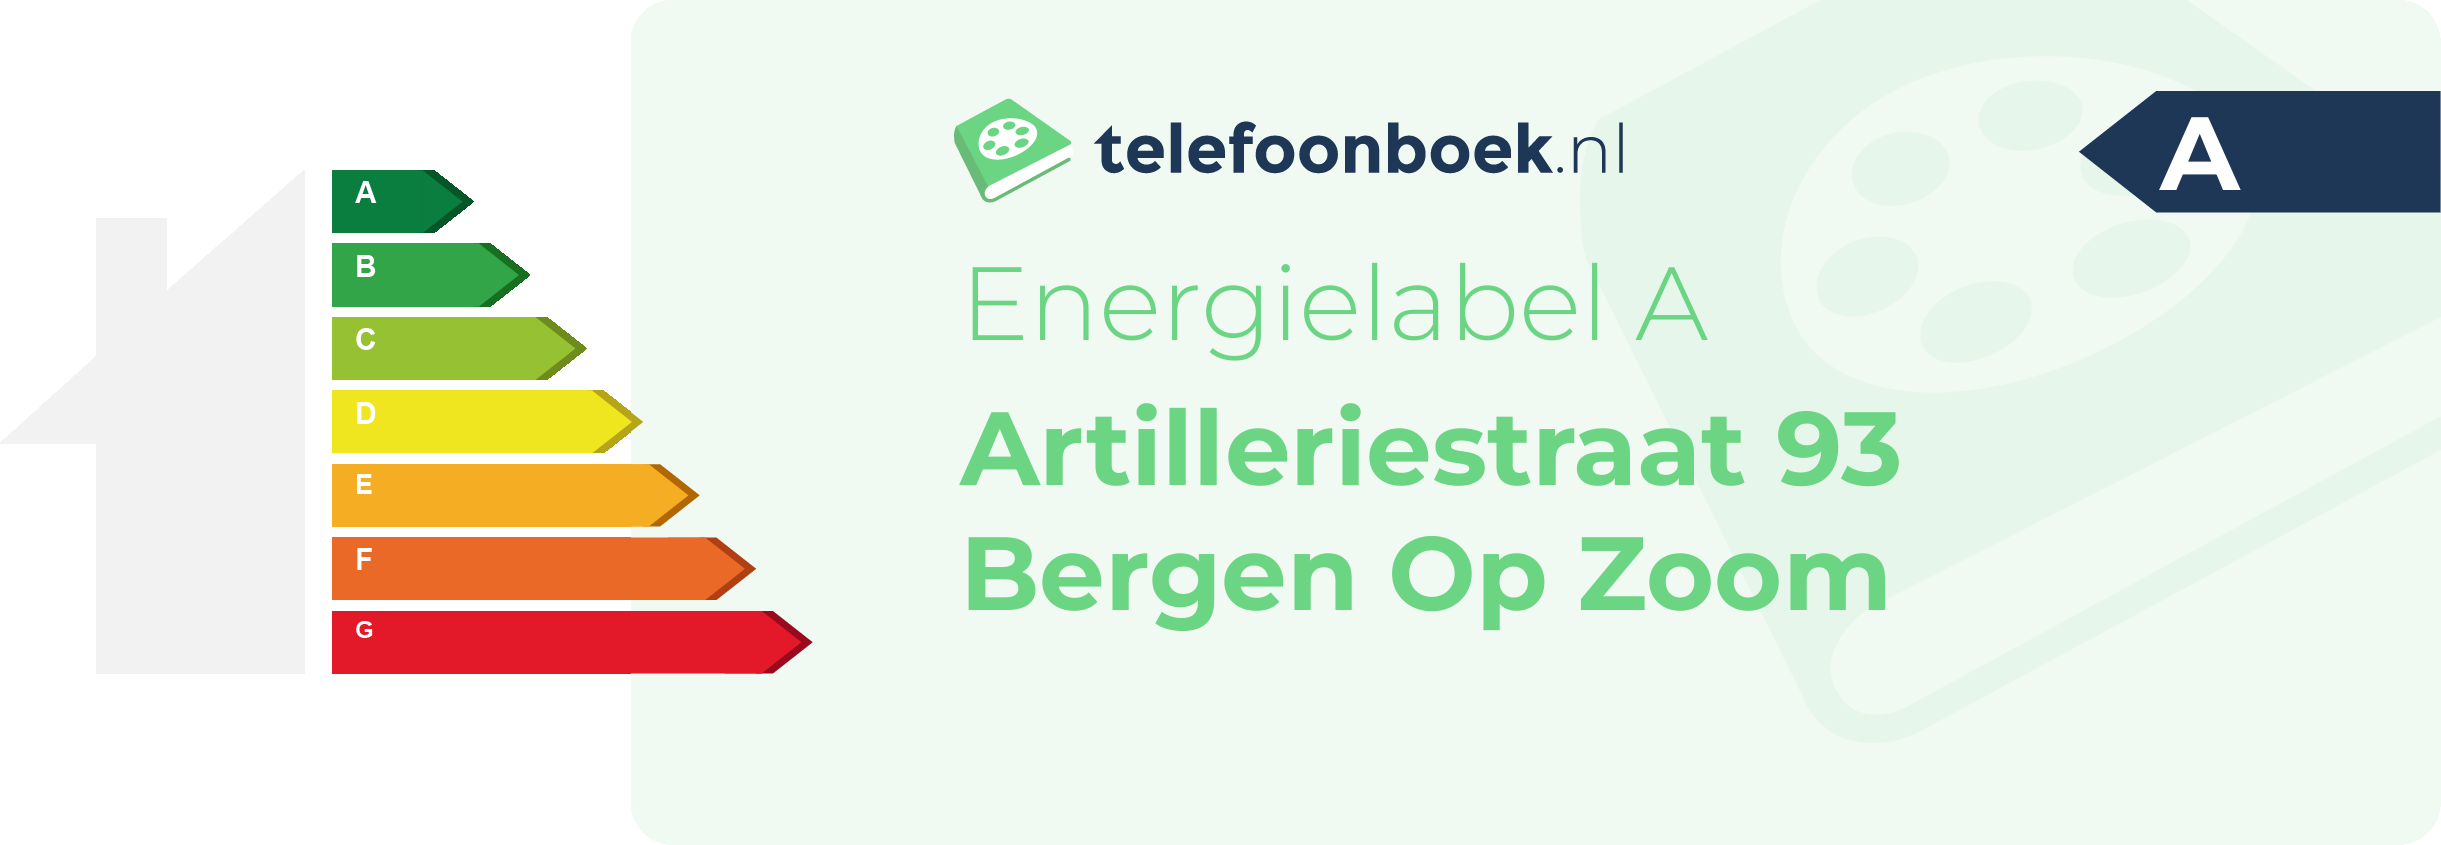 Energielabel Artilleriestraat 93 Bergen Op Zoom